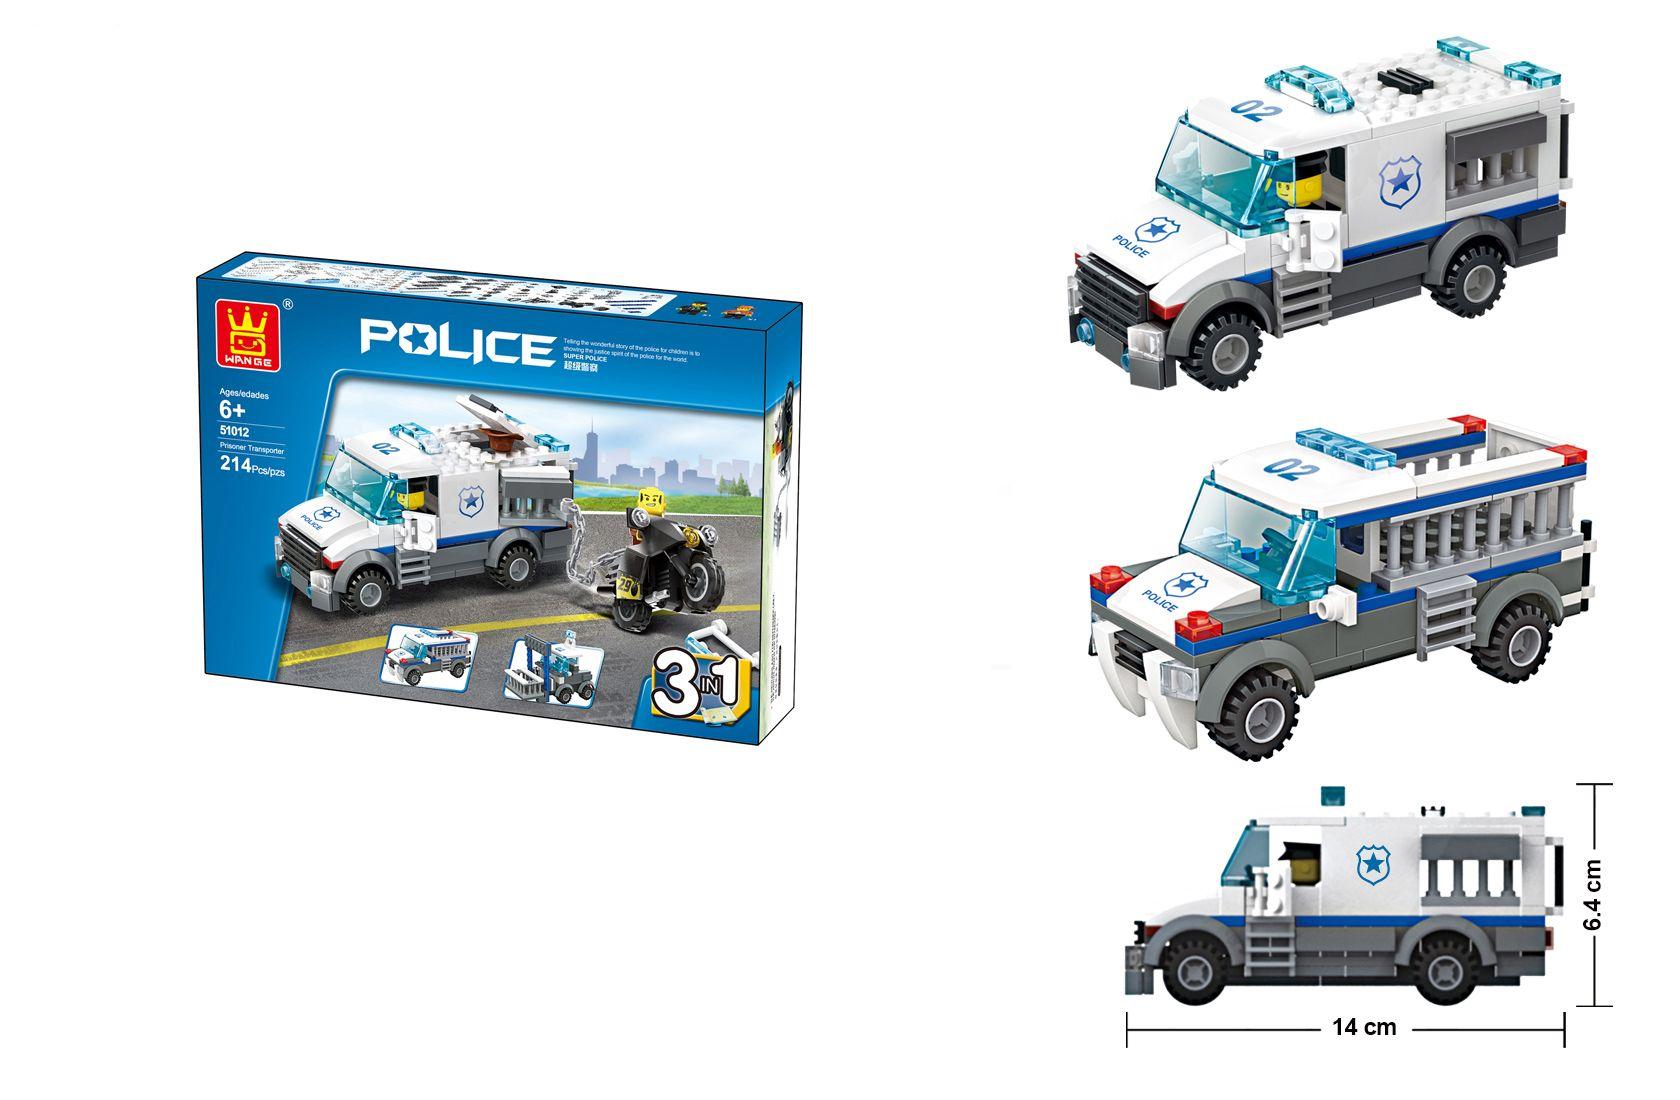 Police car 3in1